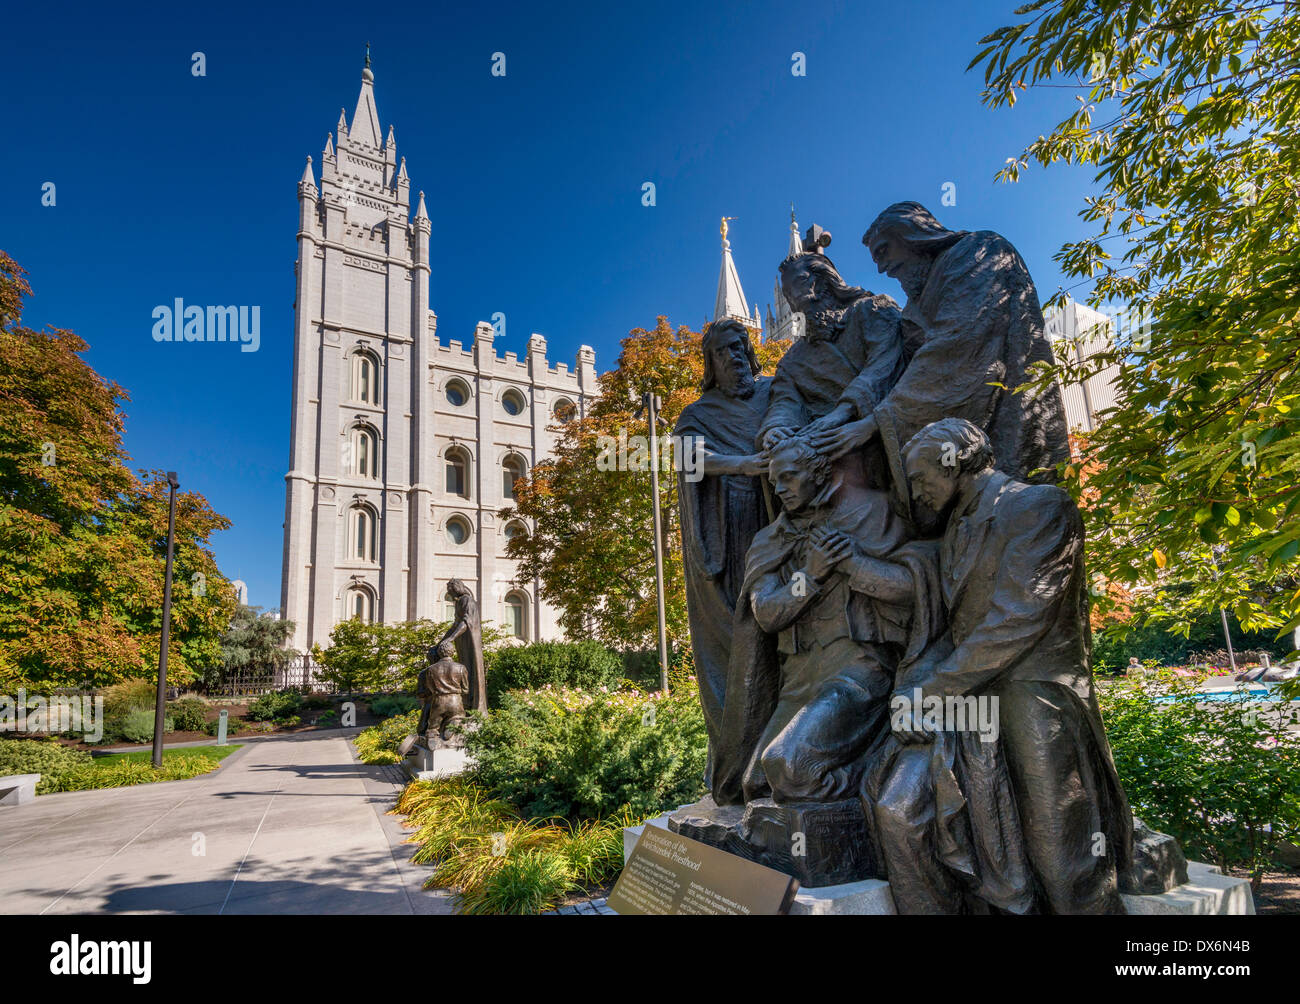 Restaurierung des Melchisedekischen Priestertums, Statue von Avard Fairbanks, Salt-Lake-Tempel, Tempelplatz, Salt Lake City, Utah, USA Stockfoto